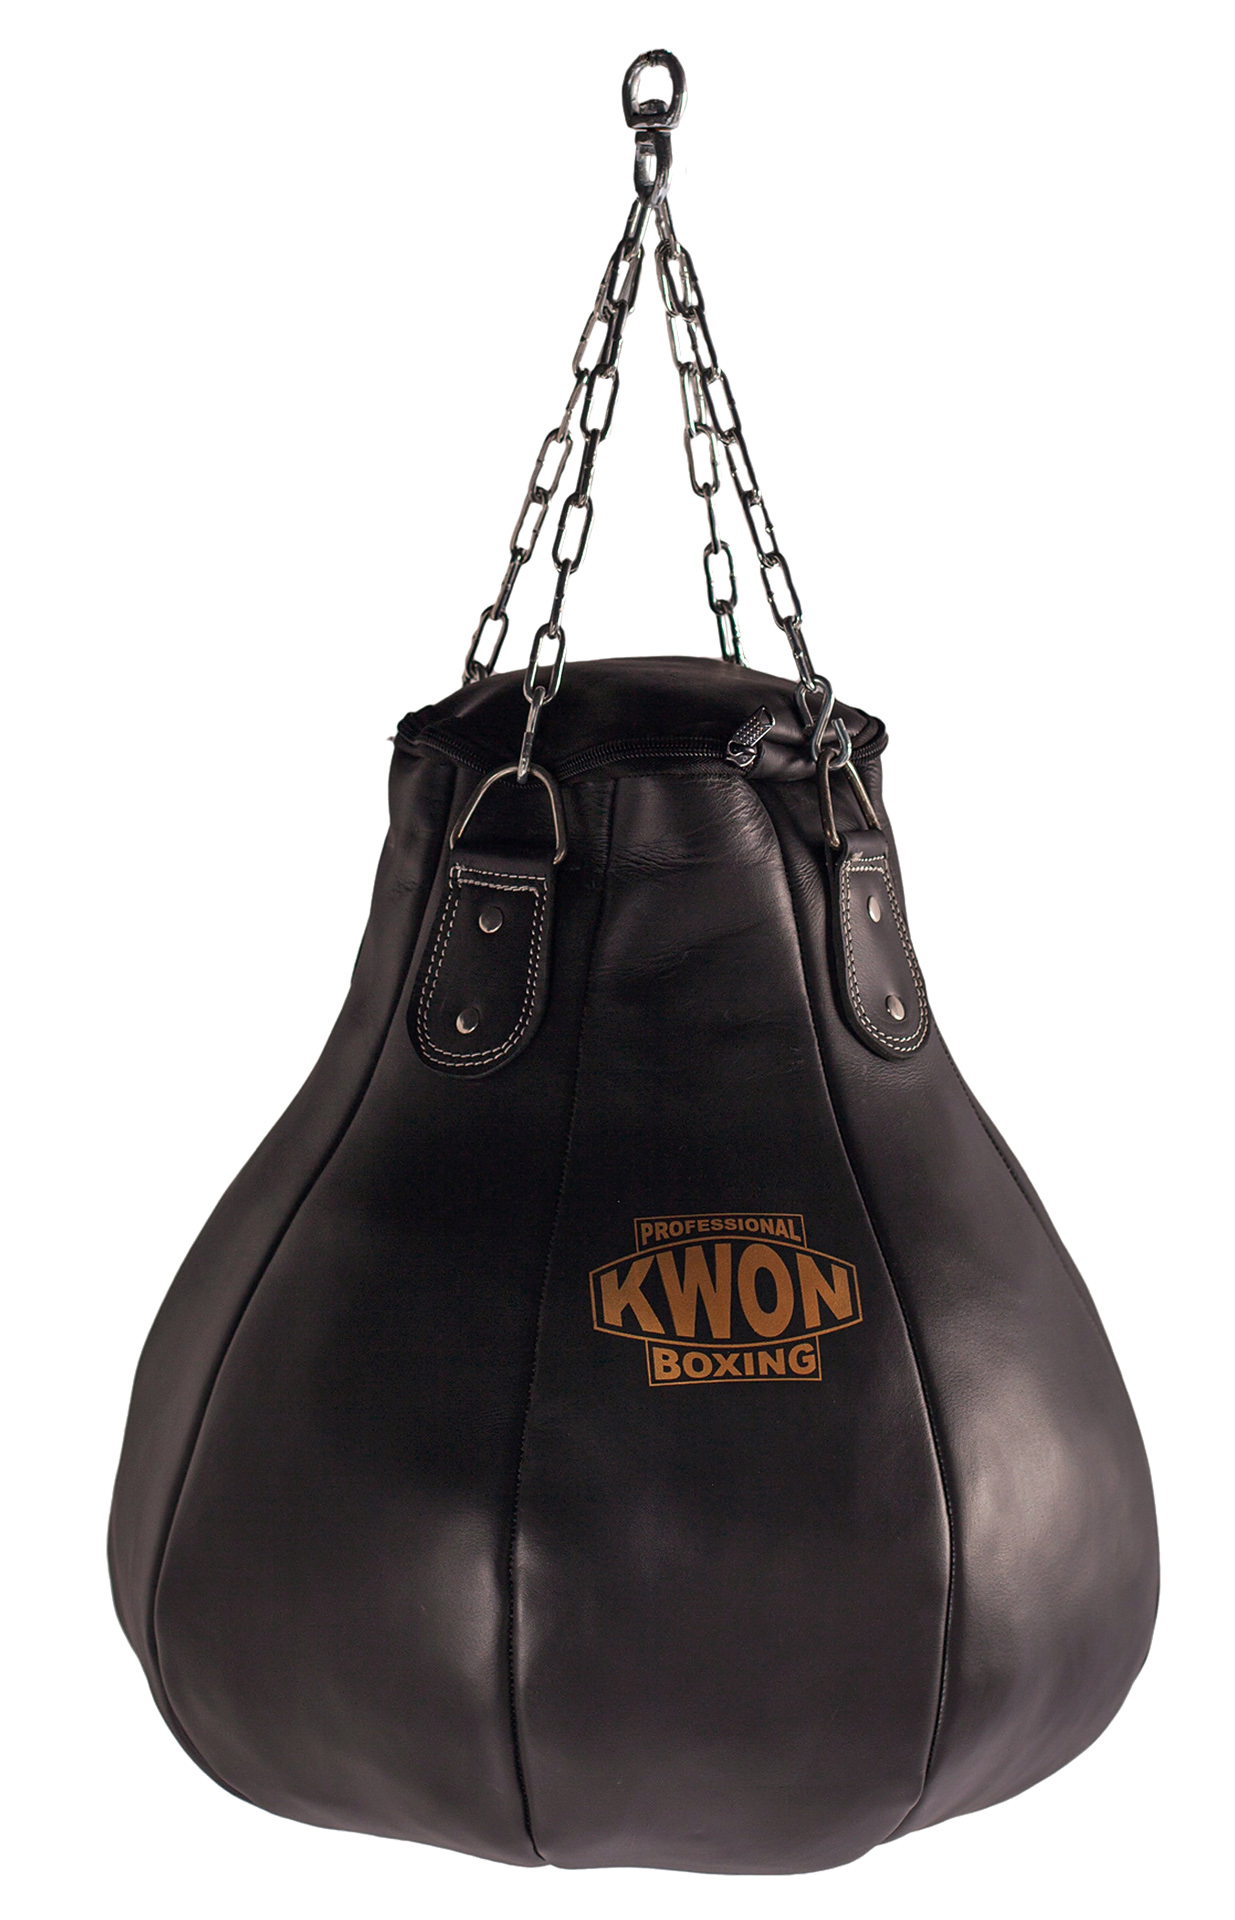 KWON PROFESSIONAL BOXING Sacco da boxe pera in pelle